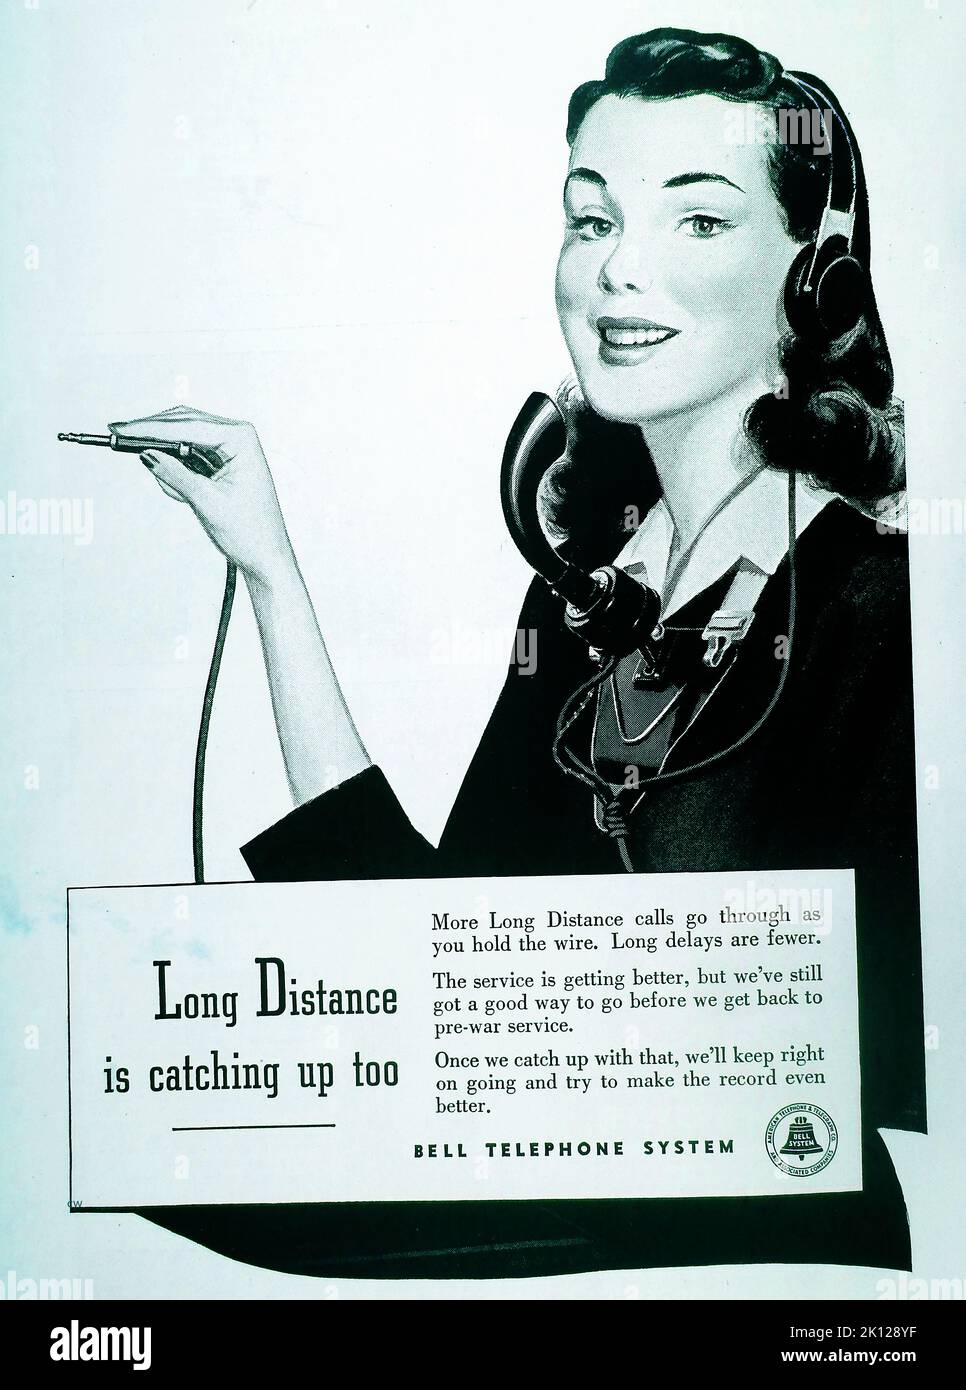 Un anuncio americano de la posguerra de 1947 para Bell Telephone Company / Bell Telephone System, diciendo que las conexiones están mejorando y pronto volverán a los estándares anteriores a la guerra, incluyendo llamadas de larga distancia. Foto de stock